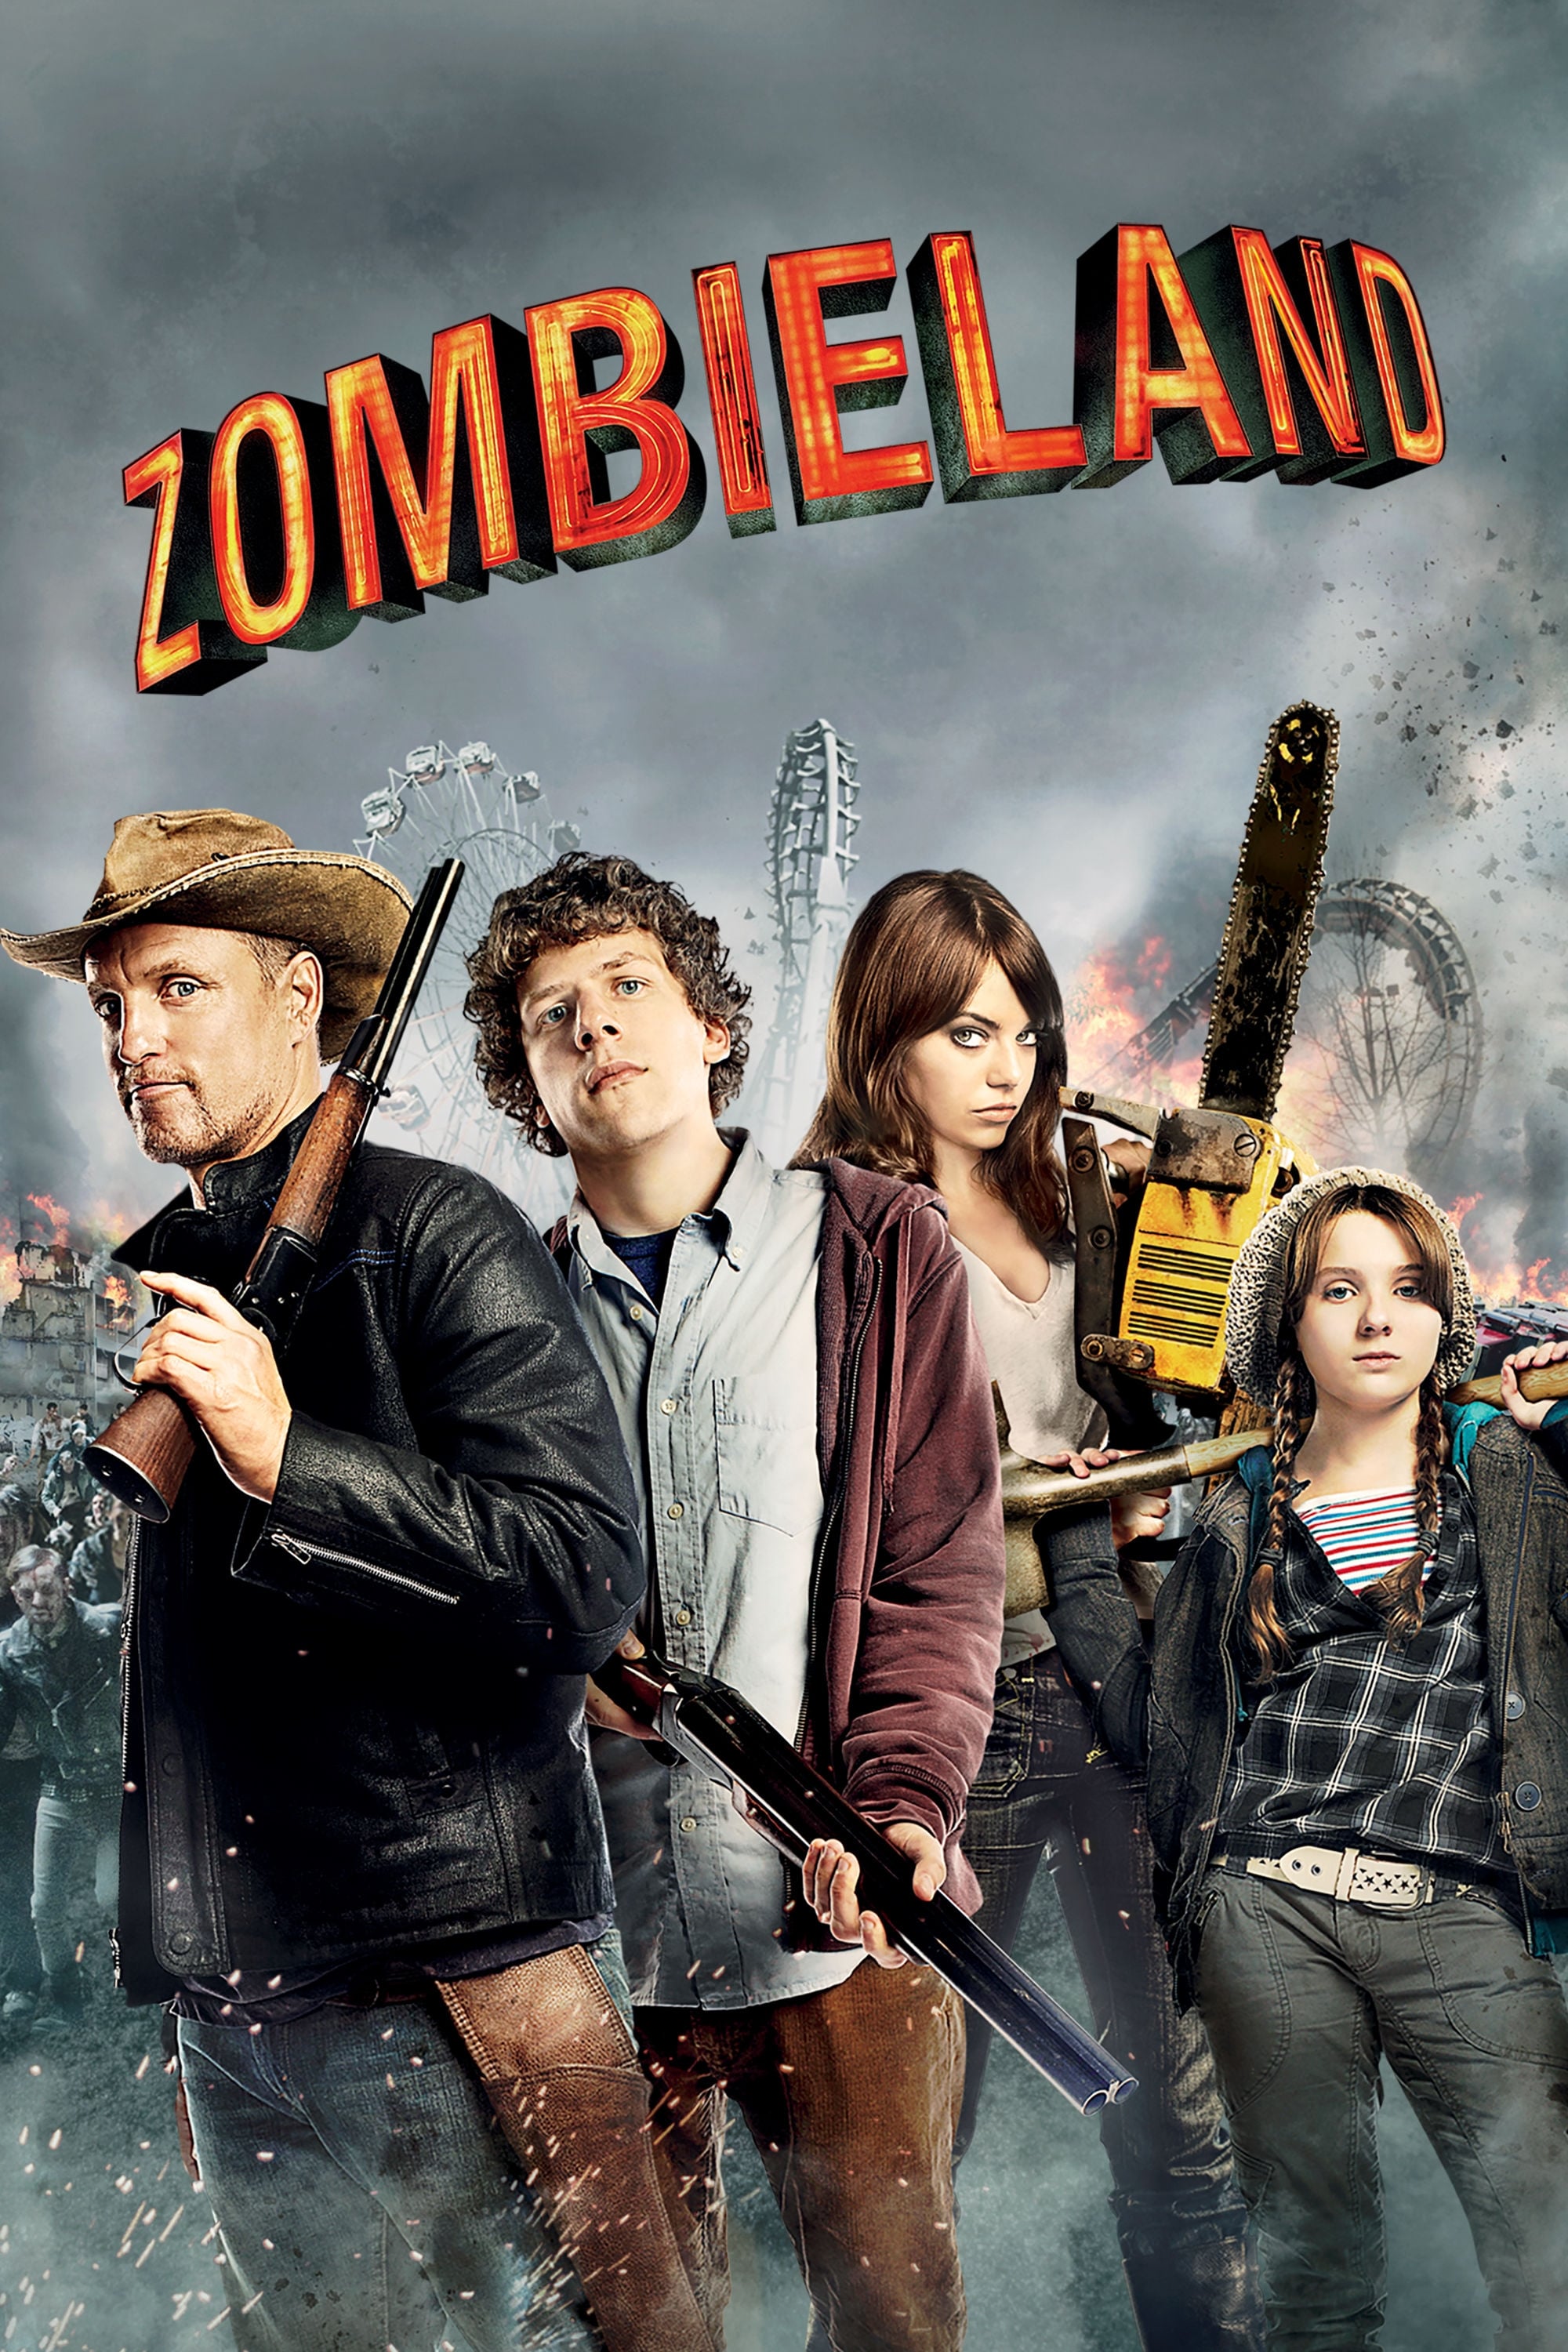 Bienvenidos a Zombieland (2009)